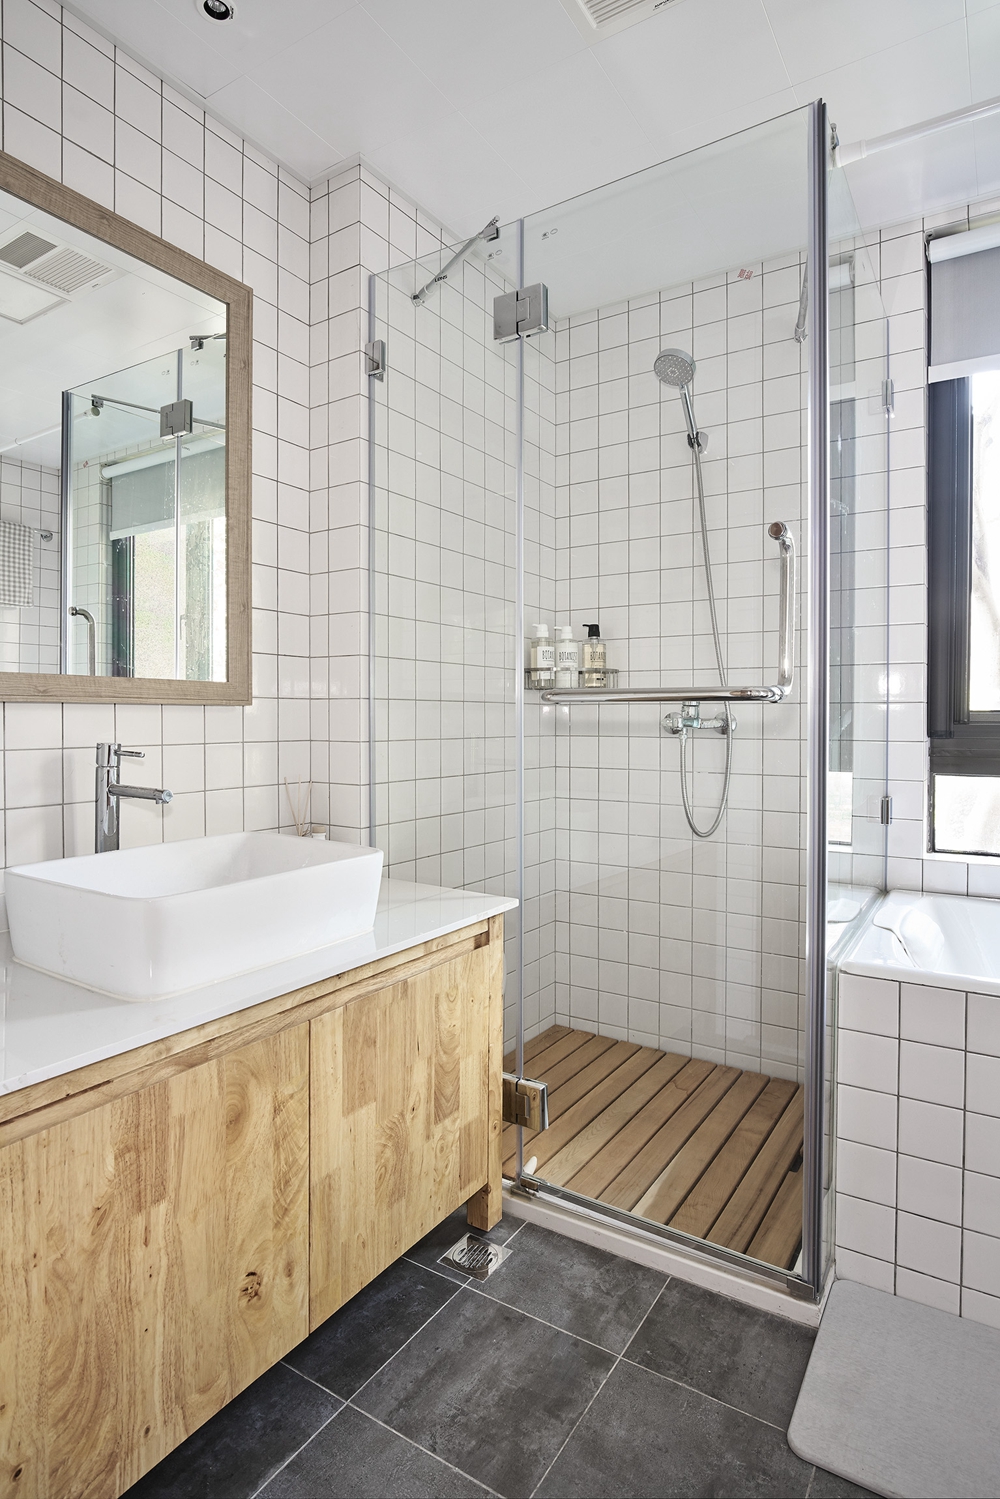 卫浴间以木色和白色为主，局部融入玻璃浴房进行干湿分离，让空间更加静谧而具有舒适感。